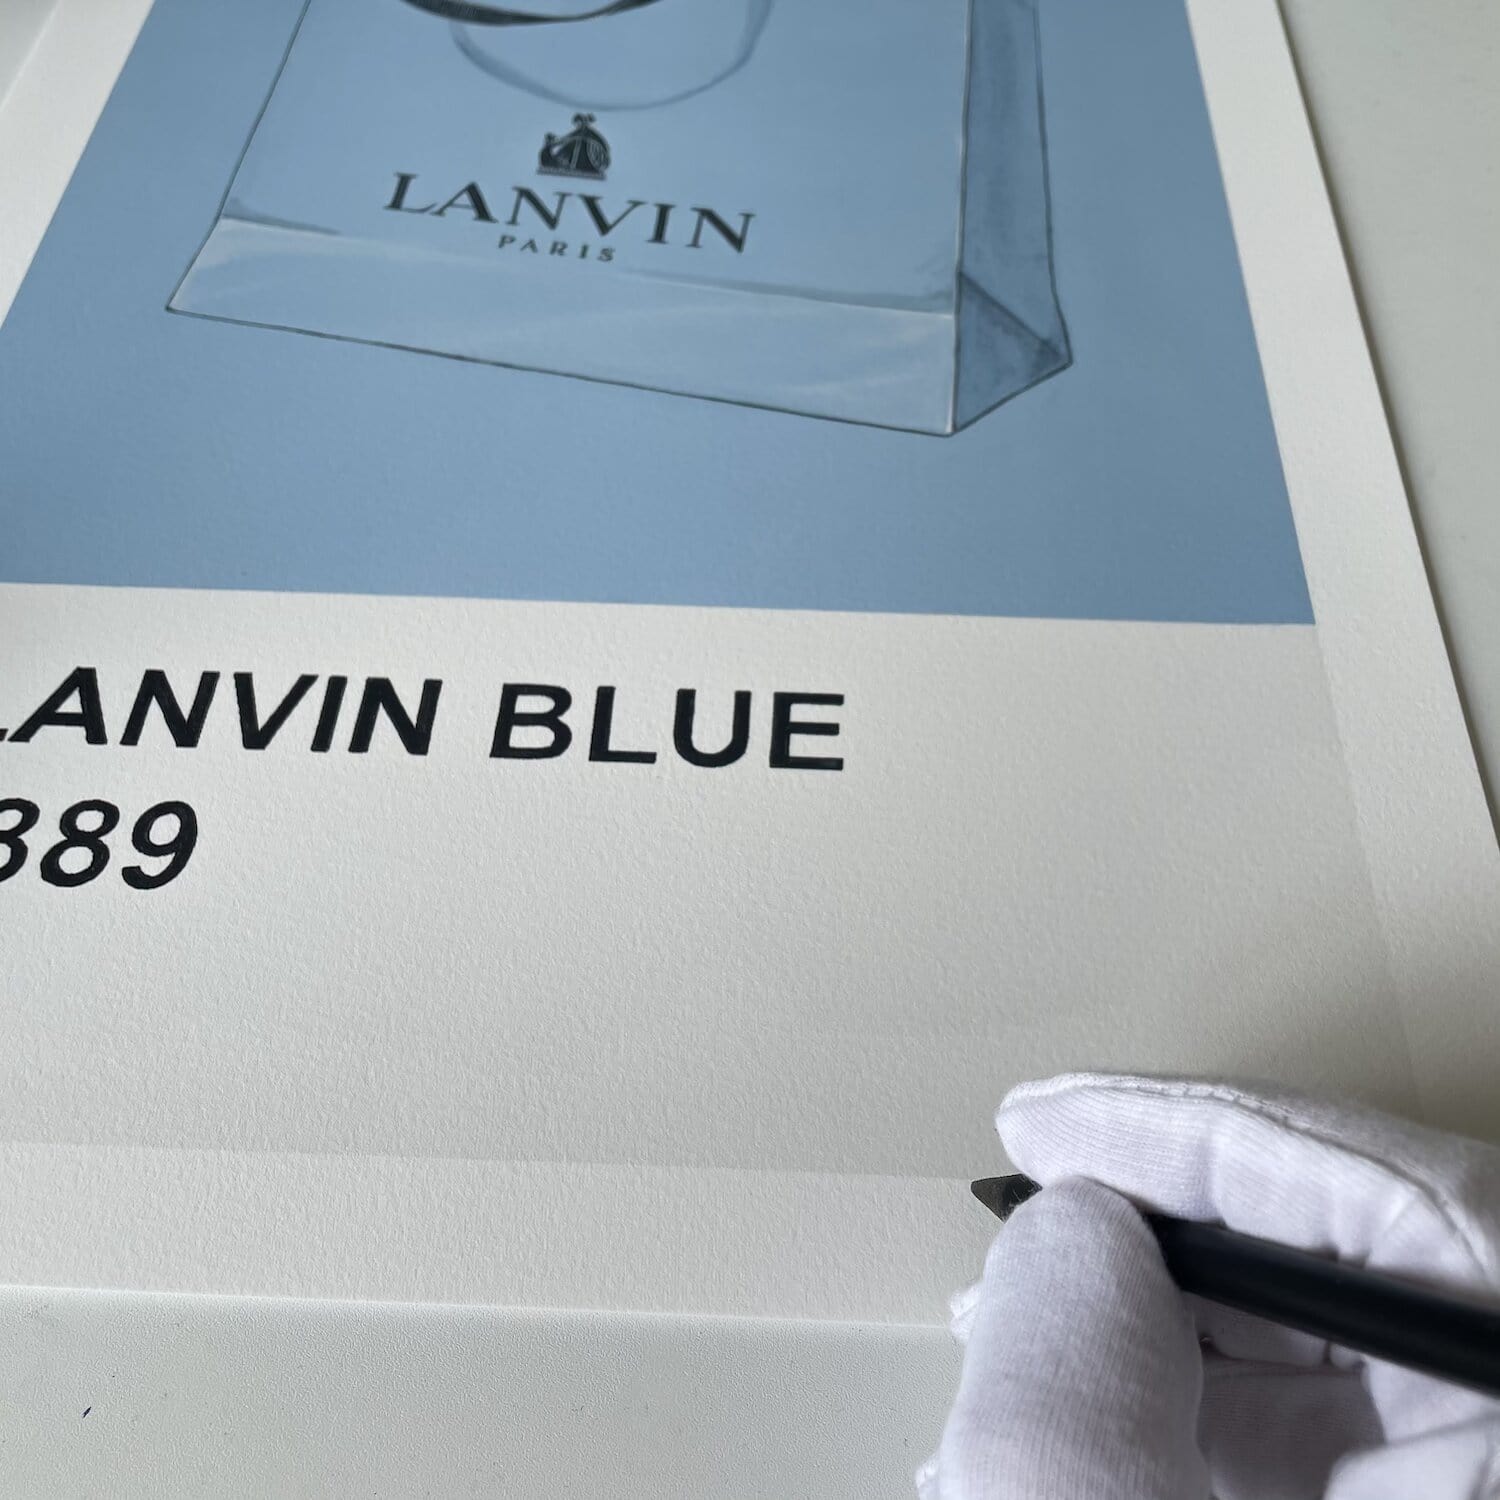 Lanvin Blue Enlarged